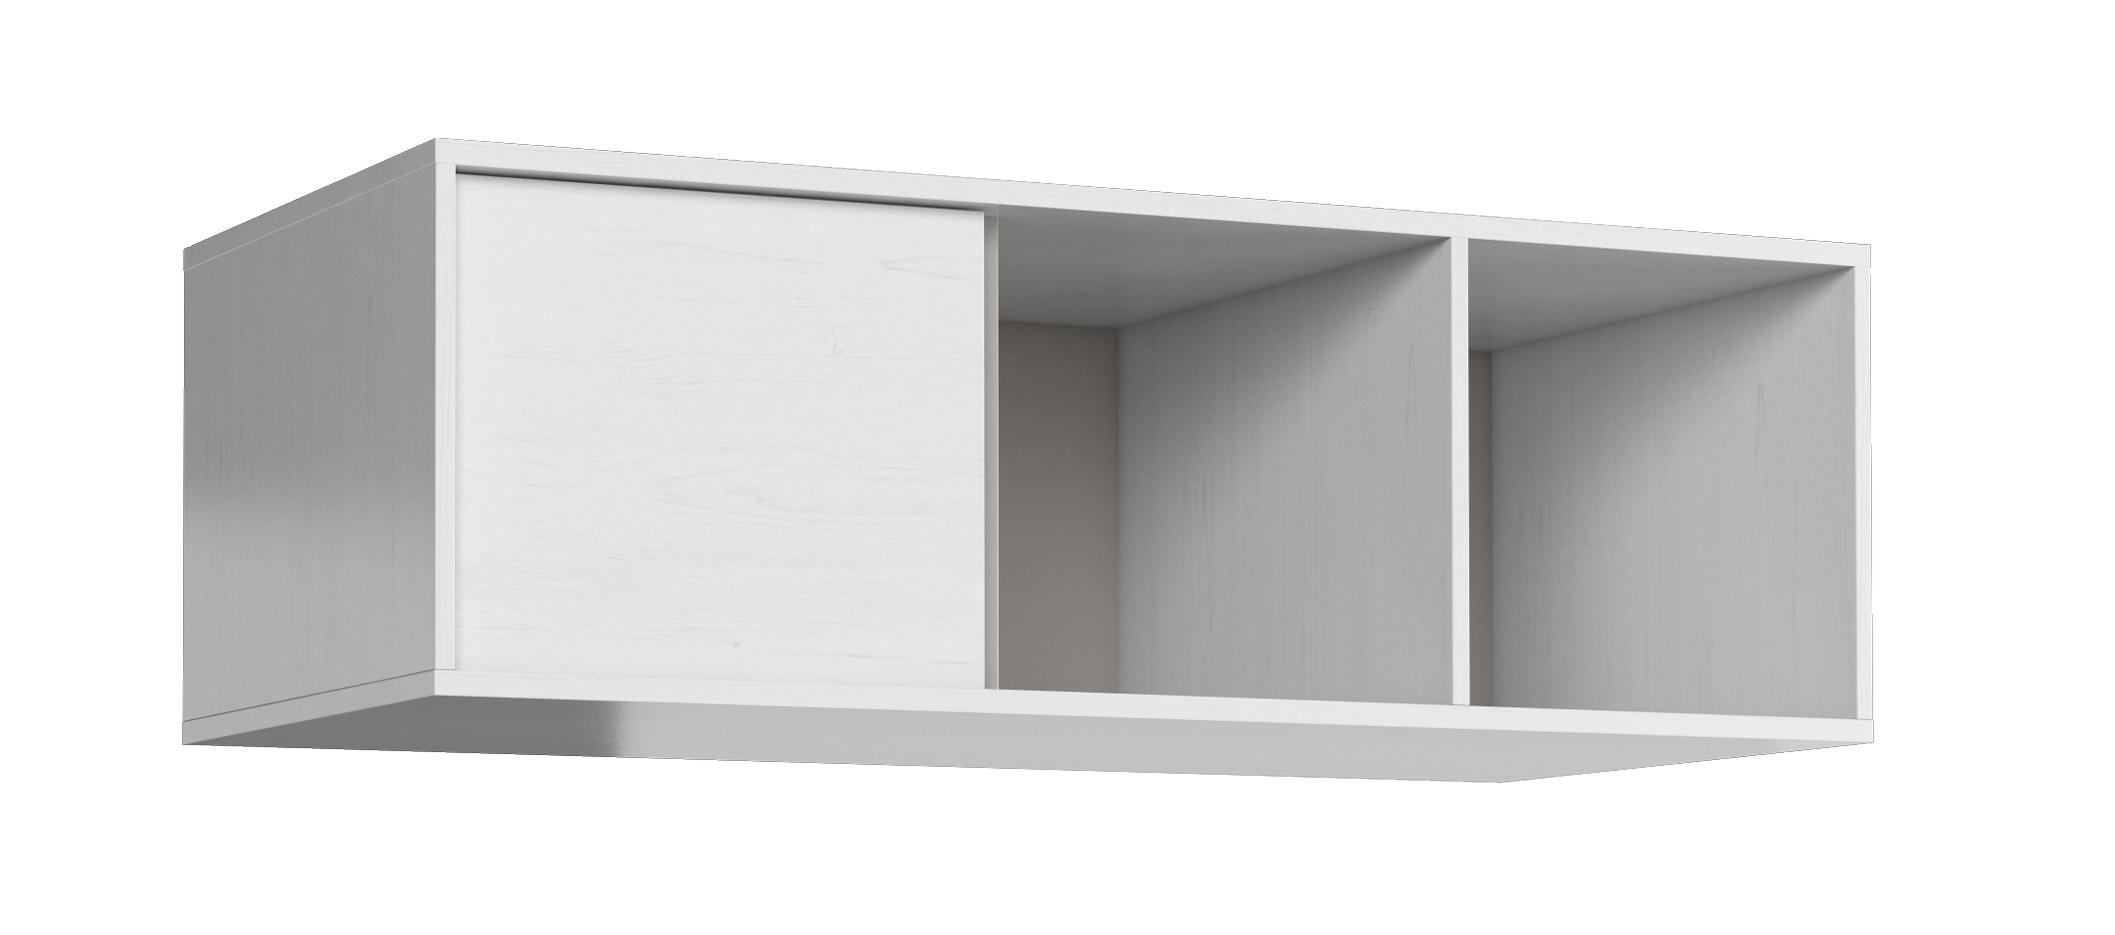 Moderne Ablage für Wohnzimmer Regal Holz Bücher Wandregal Neu Siena Mati